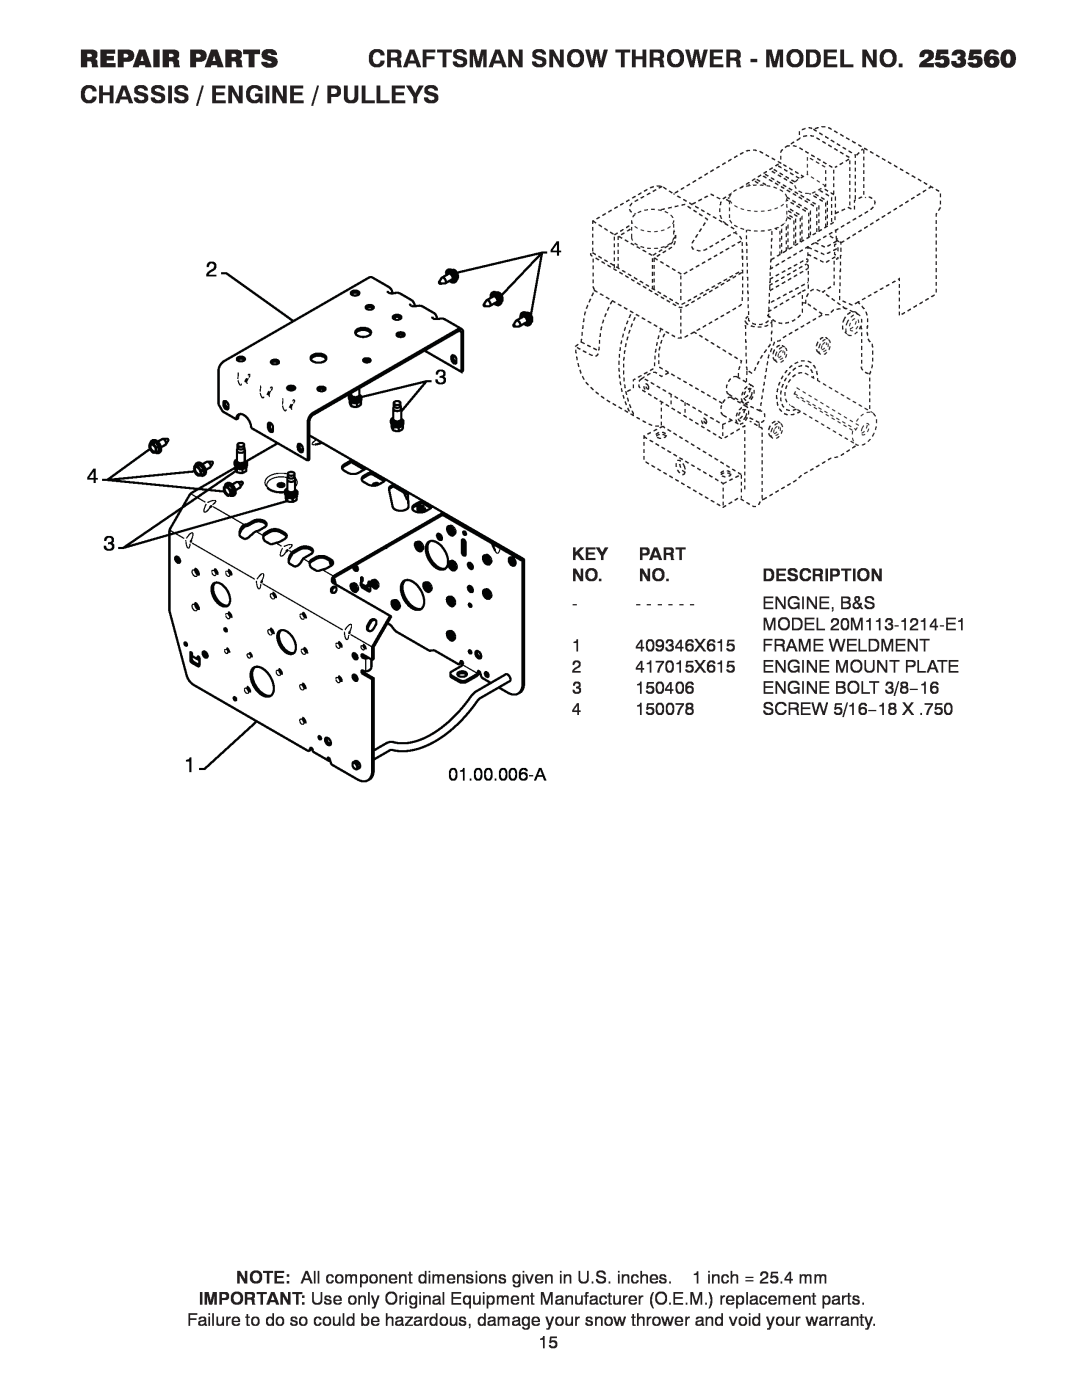 Craftsman 253560 manual 01.00.006-A, Part, Description 